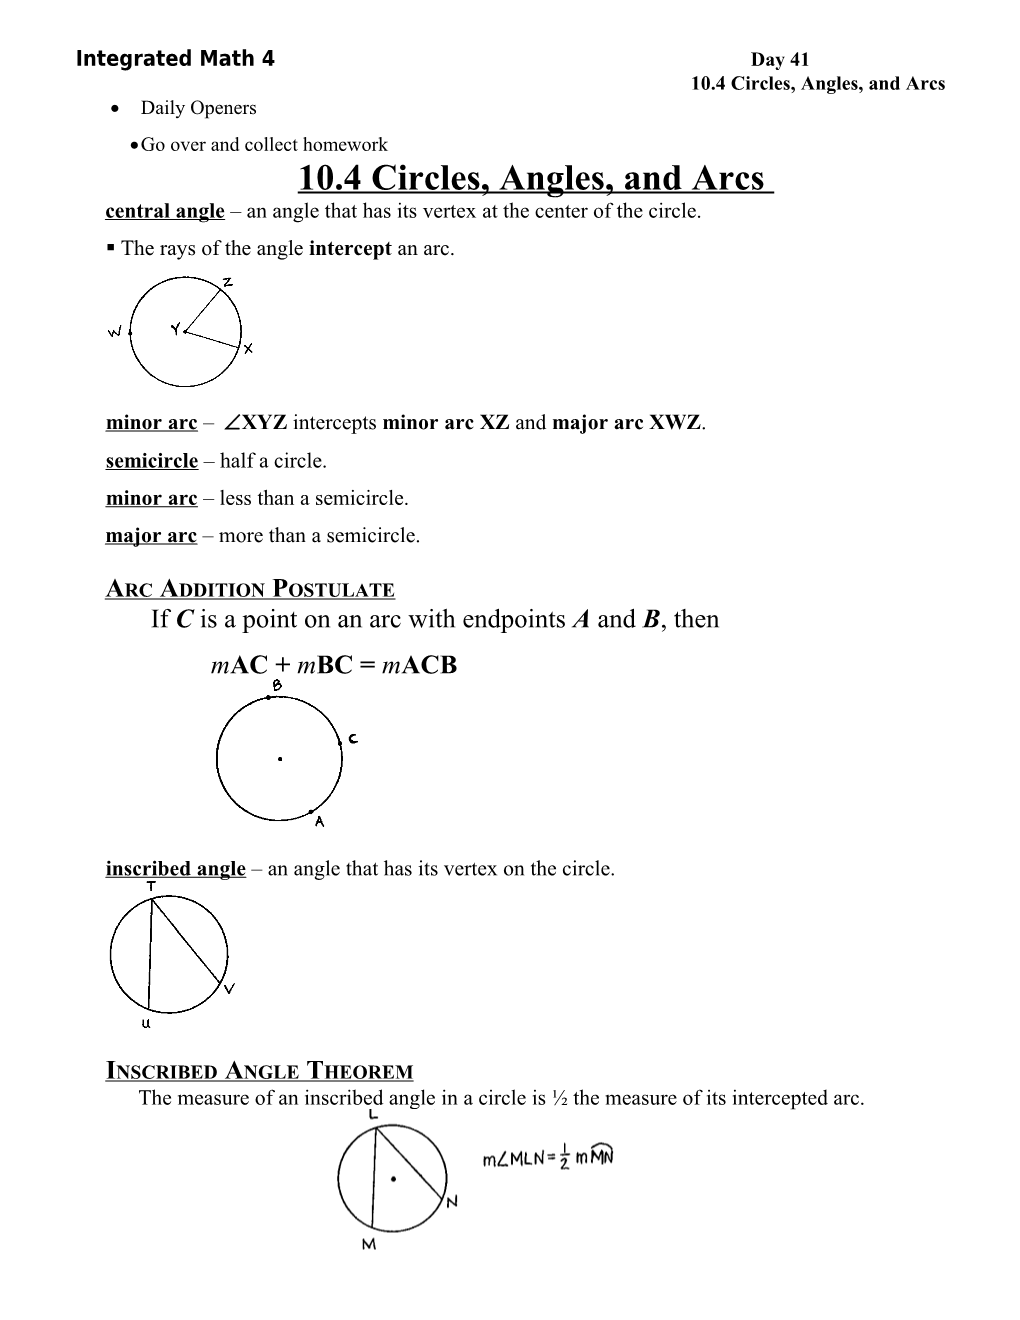 10.4 Circles, Angles, and Arcs